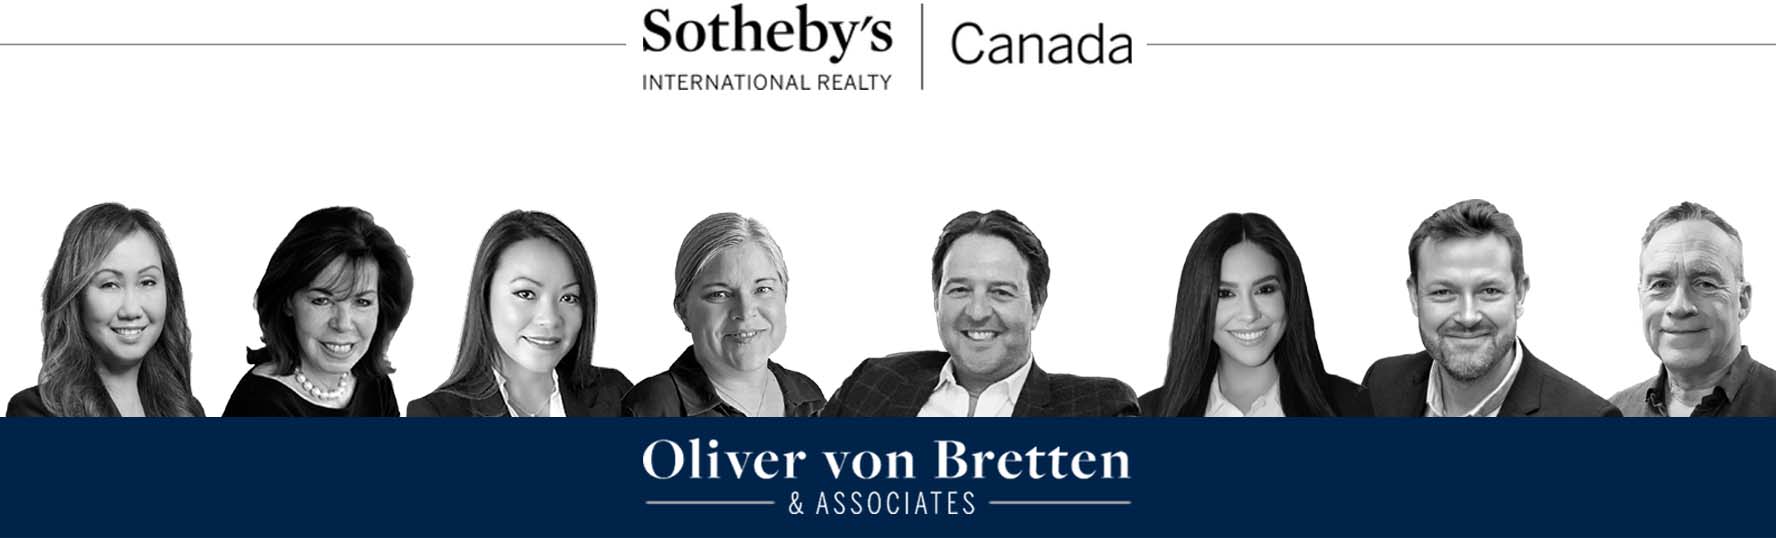 Oliver Baumeister Von Bretten & Associates